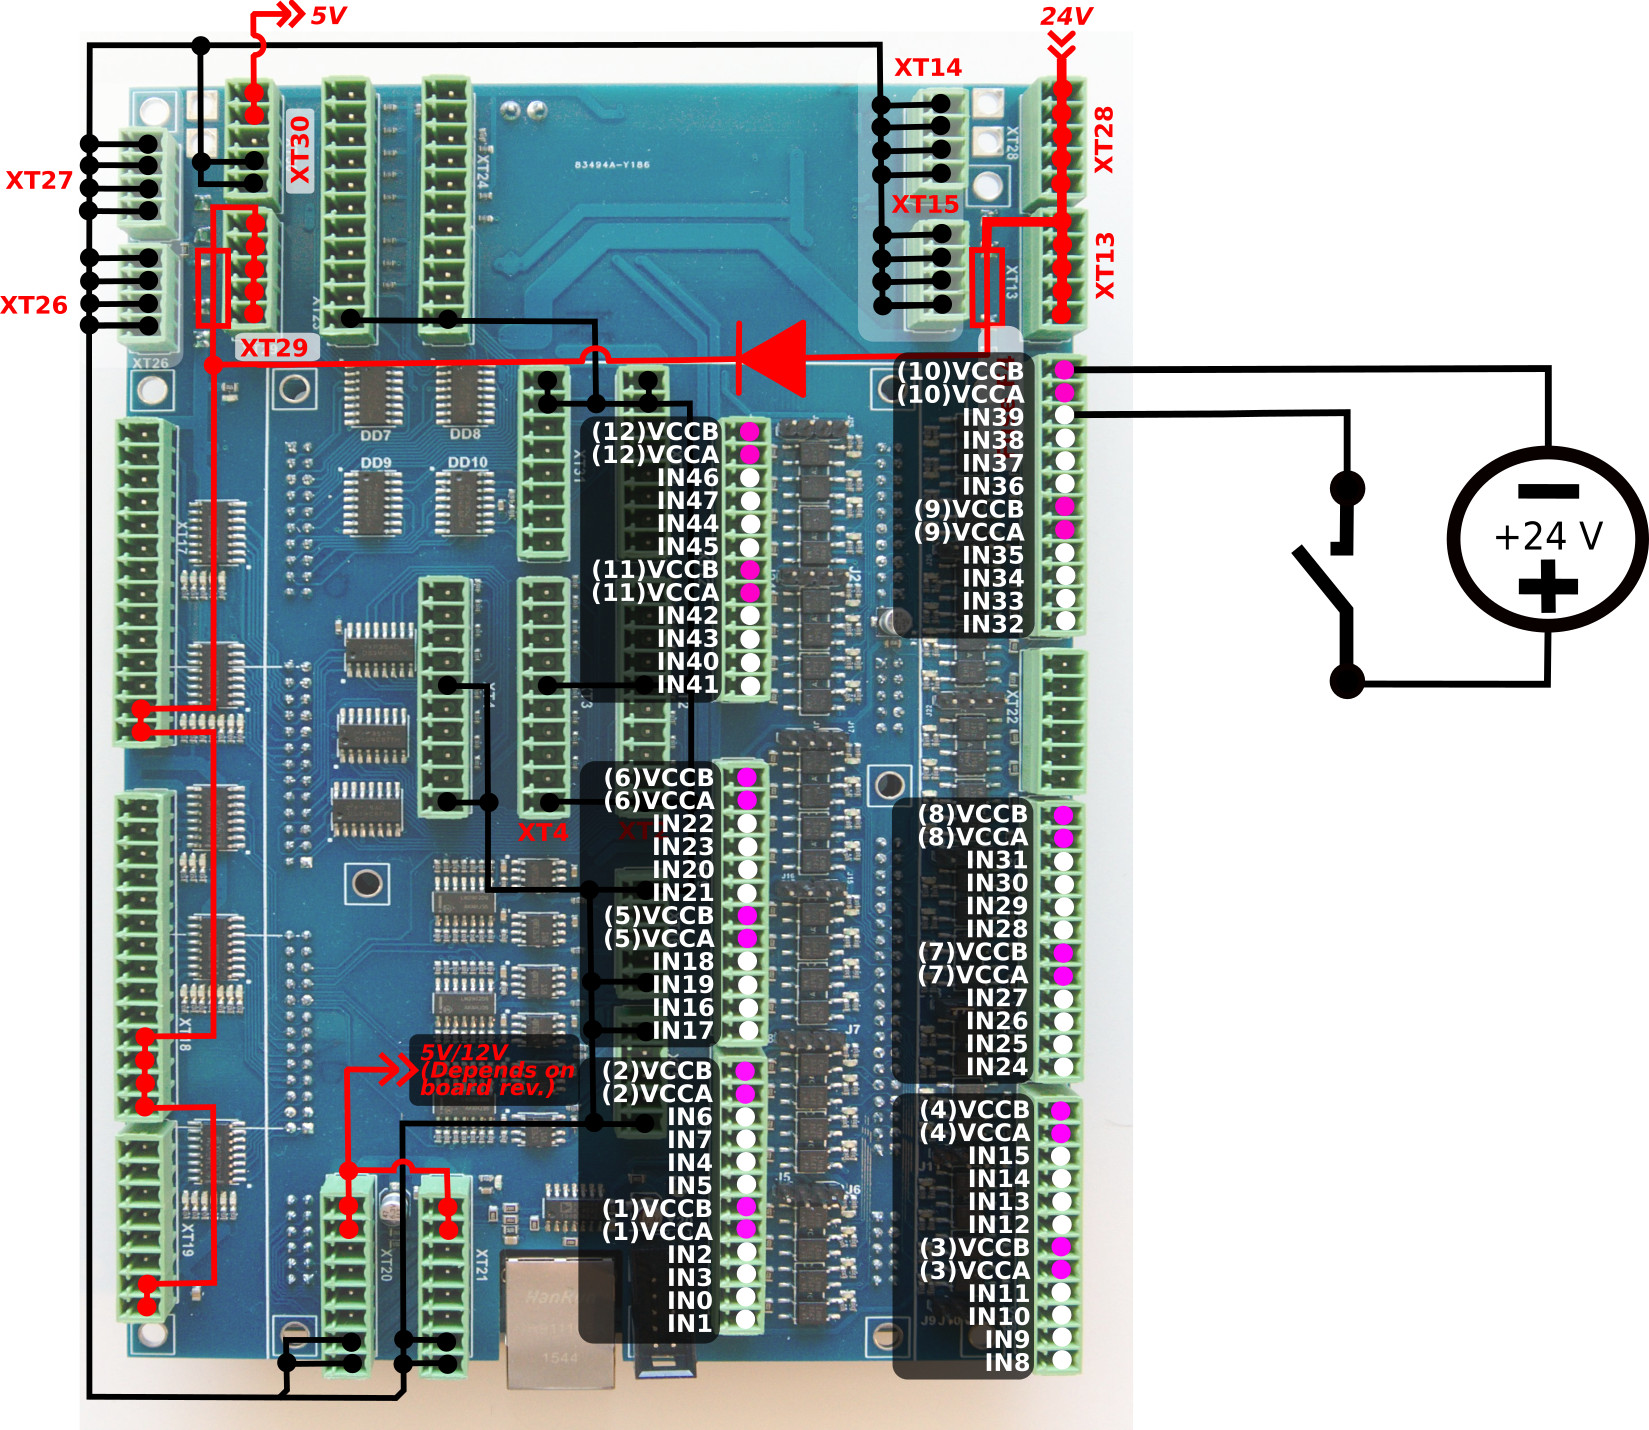 et10-connection-inputs-002-key-02-02.jpg